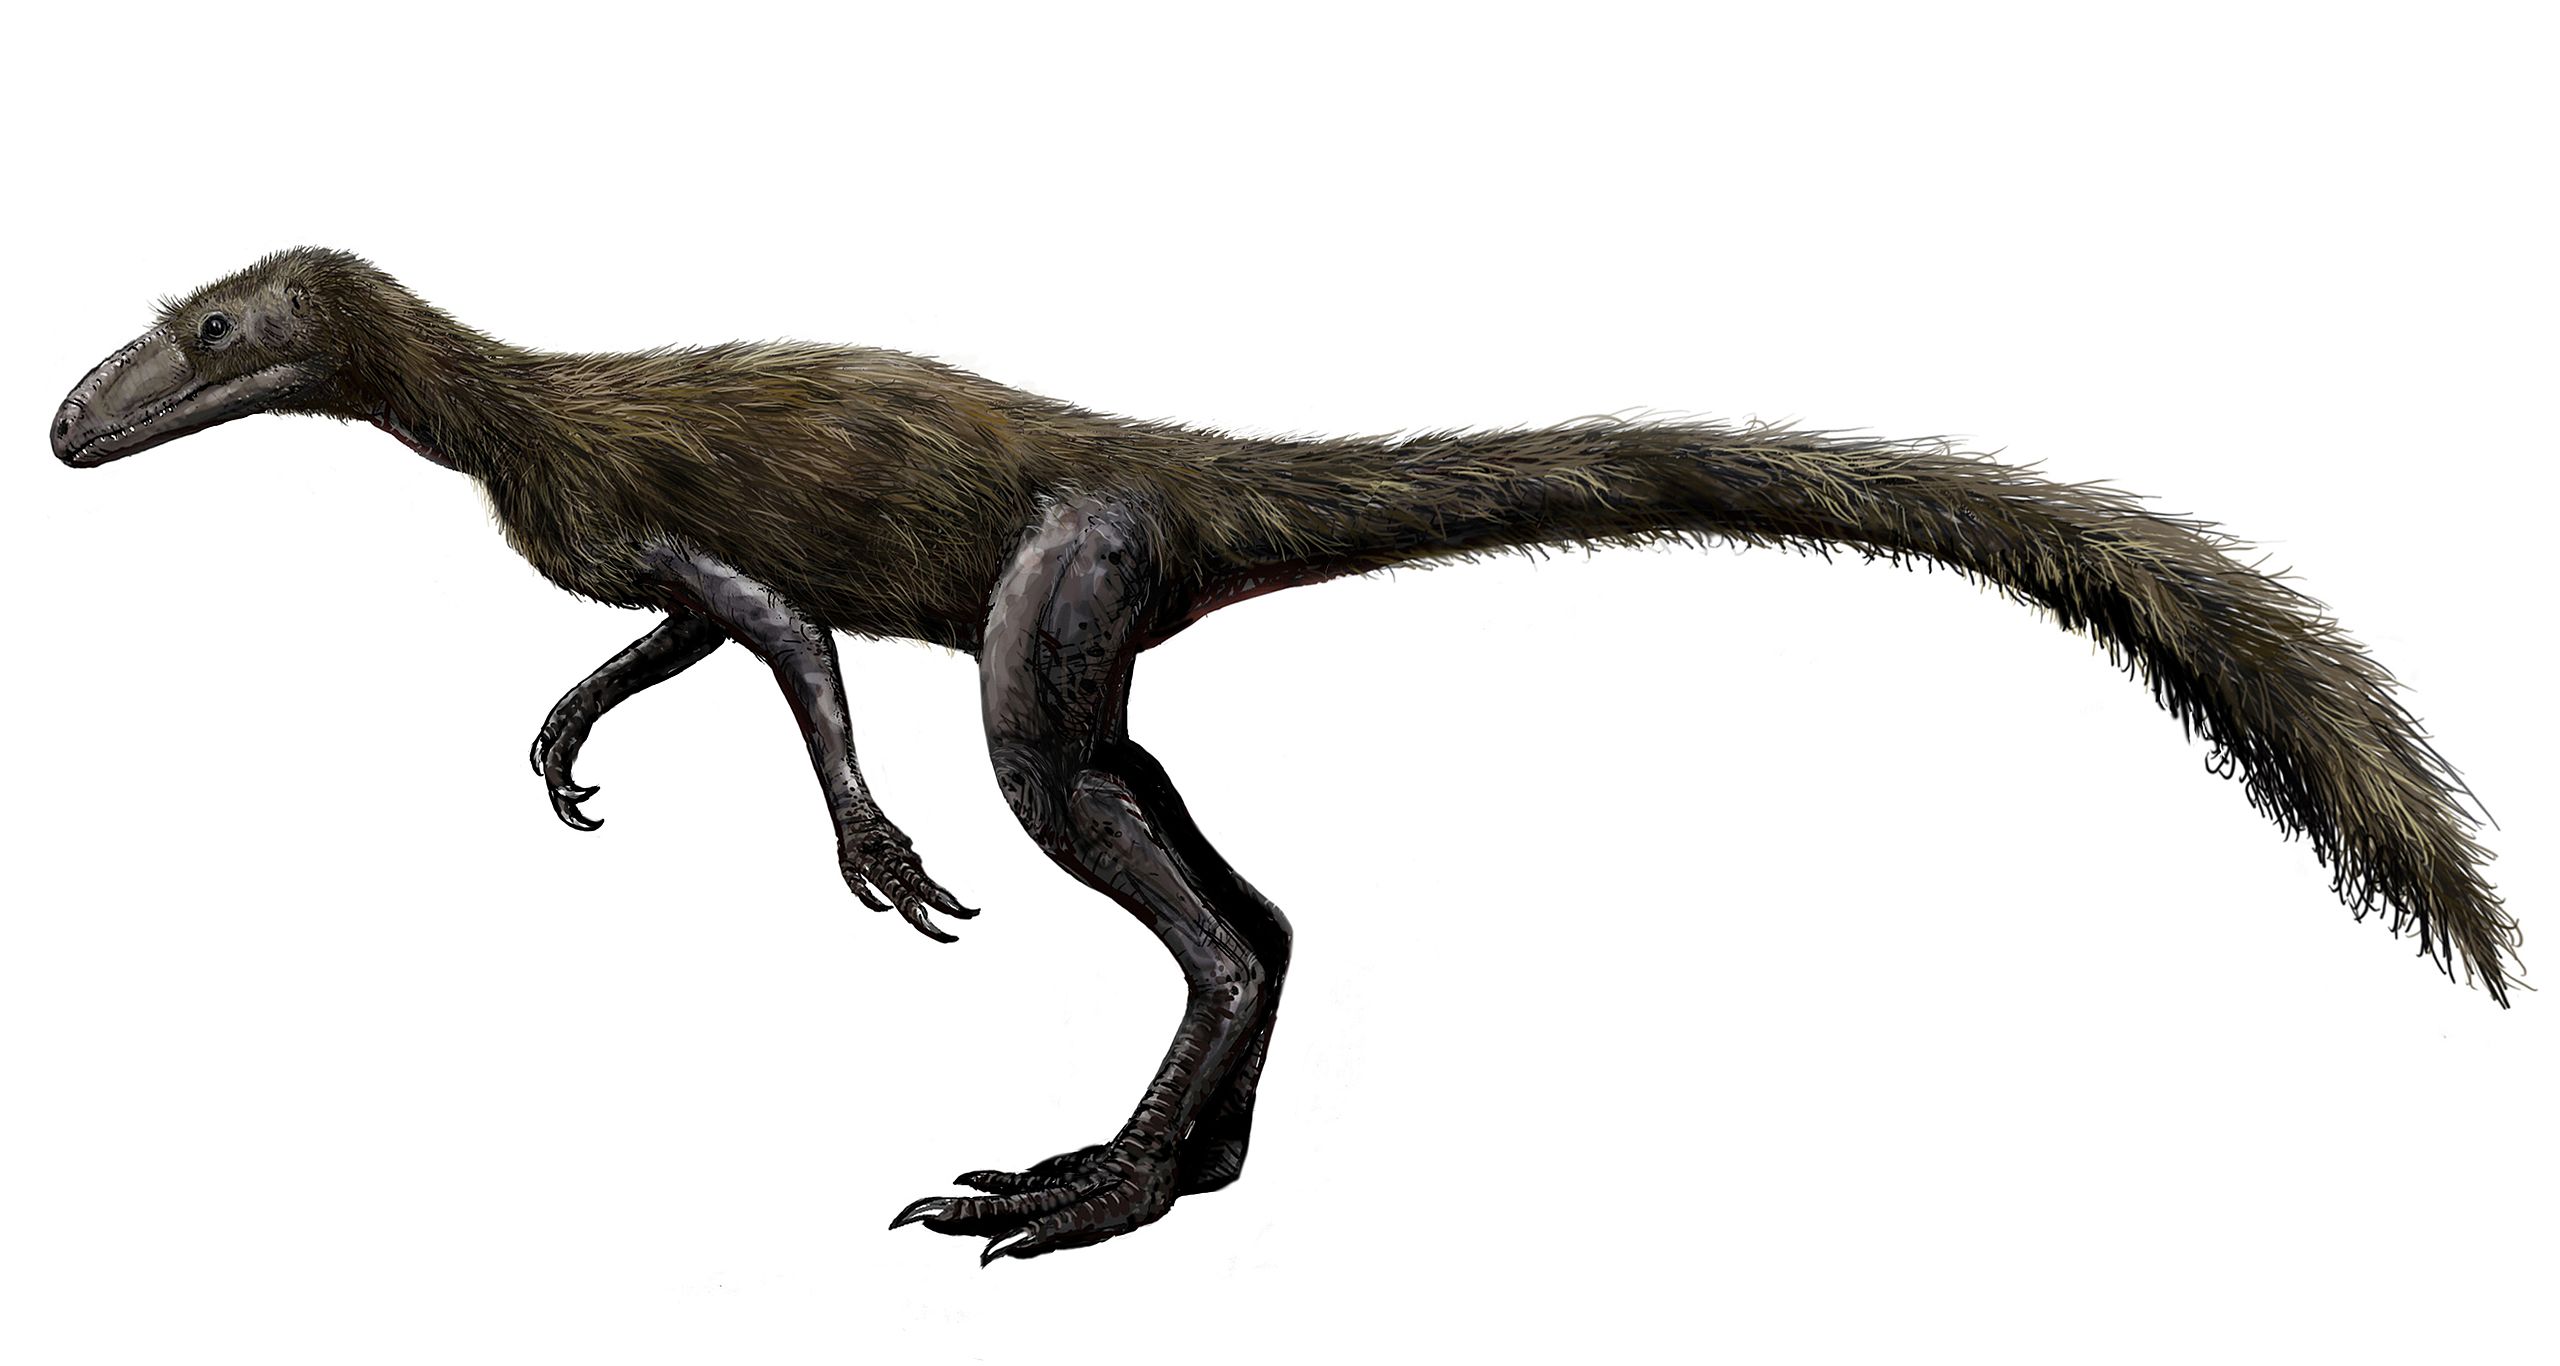 Rekonstrukce přibližného vzezření dinosauriforma druhu Lagosuchus (Marasuchus) lilloensis, žijícího v době před 235 miliony let na území současné Argentiny. Tento agilní plaz o velikosti kočky byl blízce vývojově příbuzný silesauridům i samotným dino